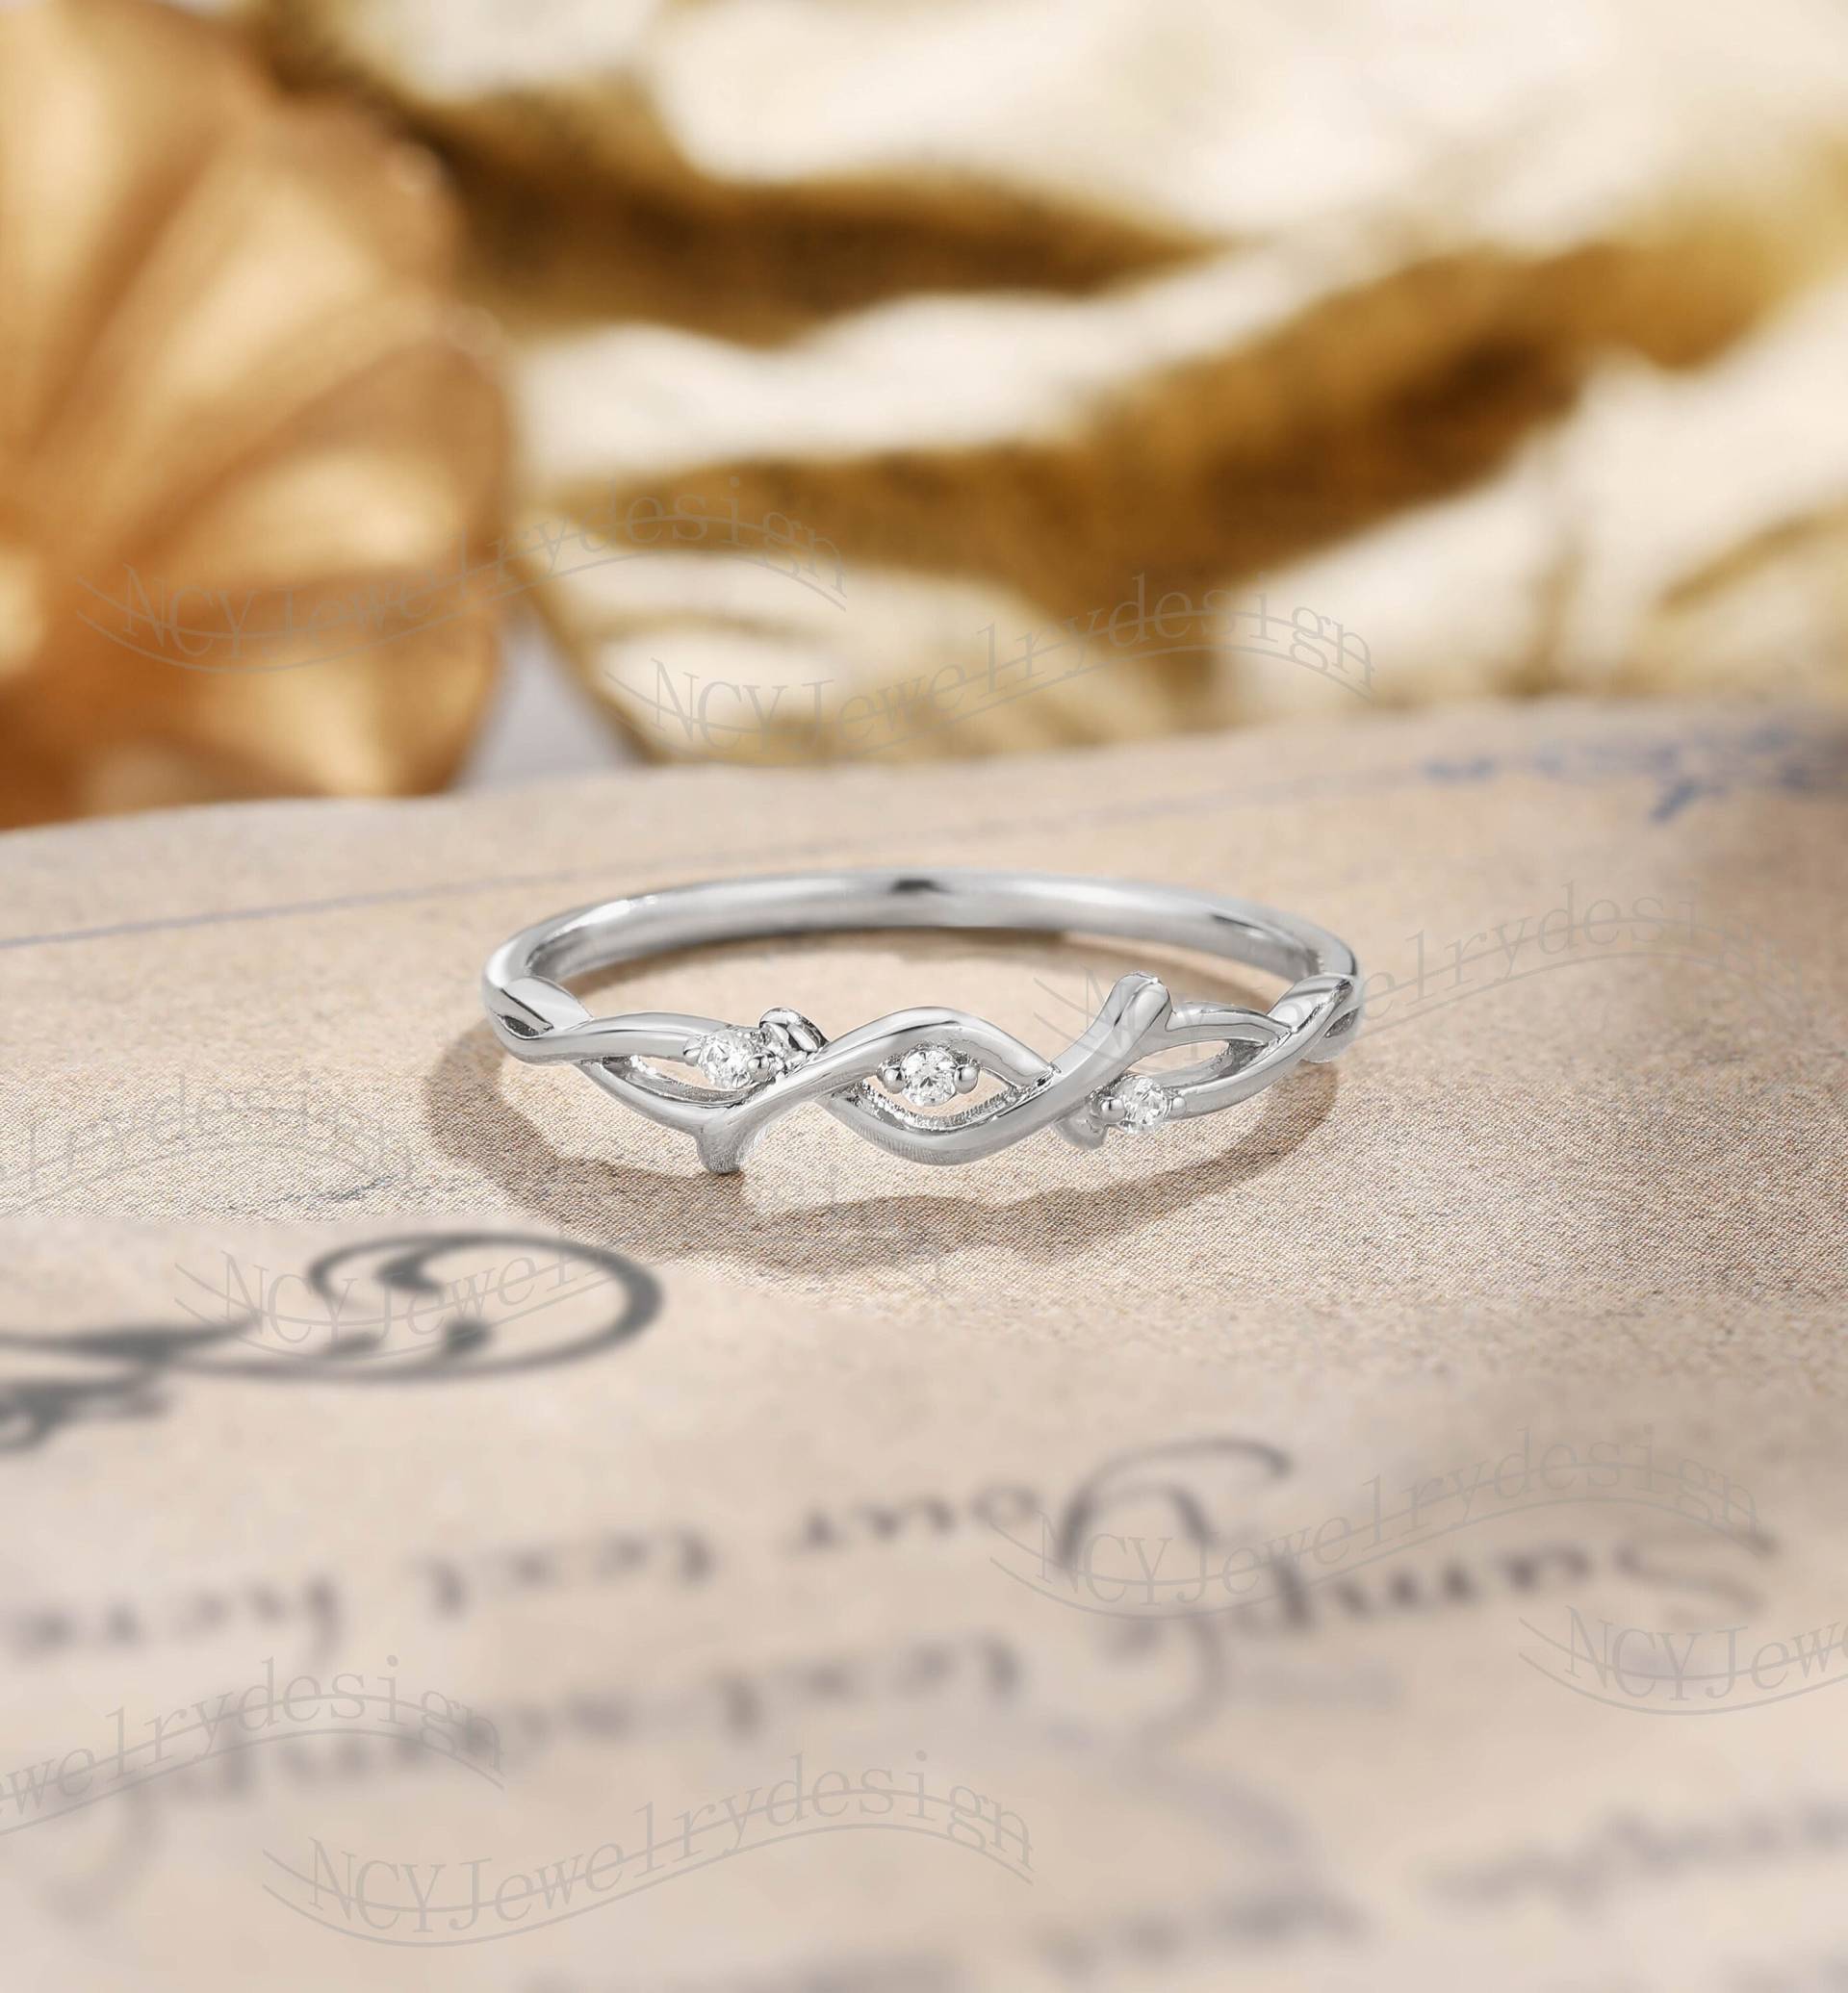 Moissanit Hochzeitsband Blatt Ast Band Twisted Wedding Vintage Unikat Brautring Solid Weiß Gold Diamant Versprechen Ring Passender von NCYJewelrydesign